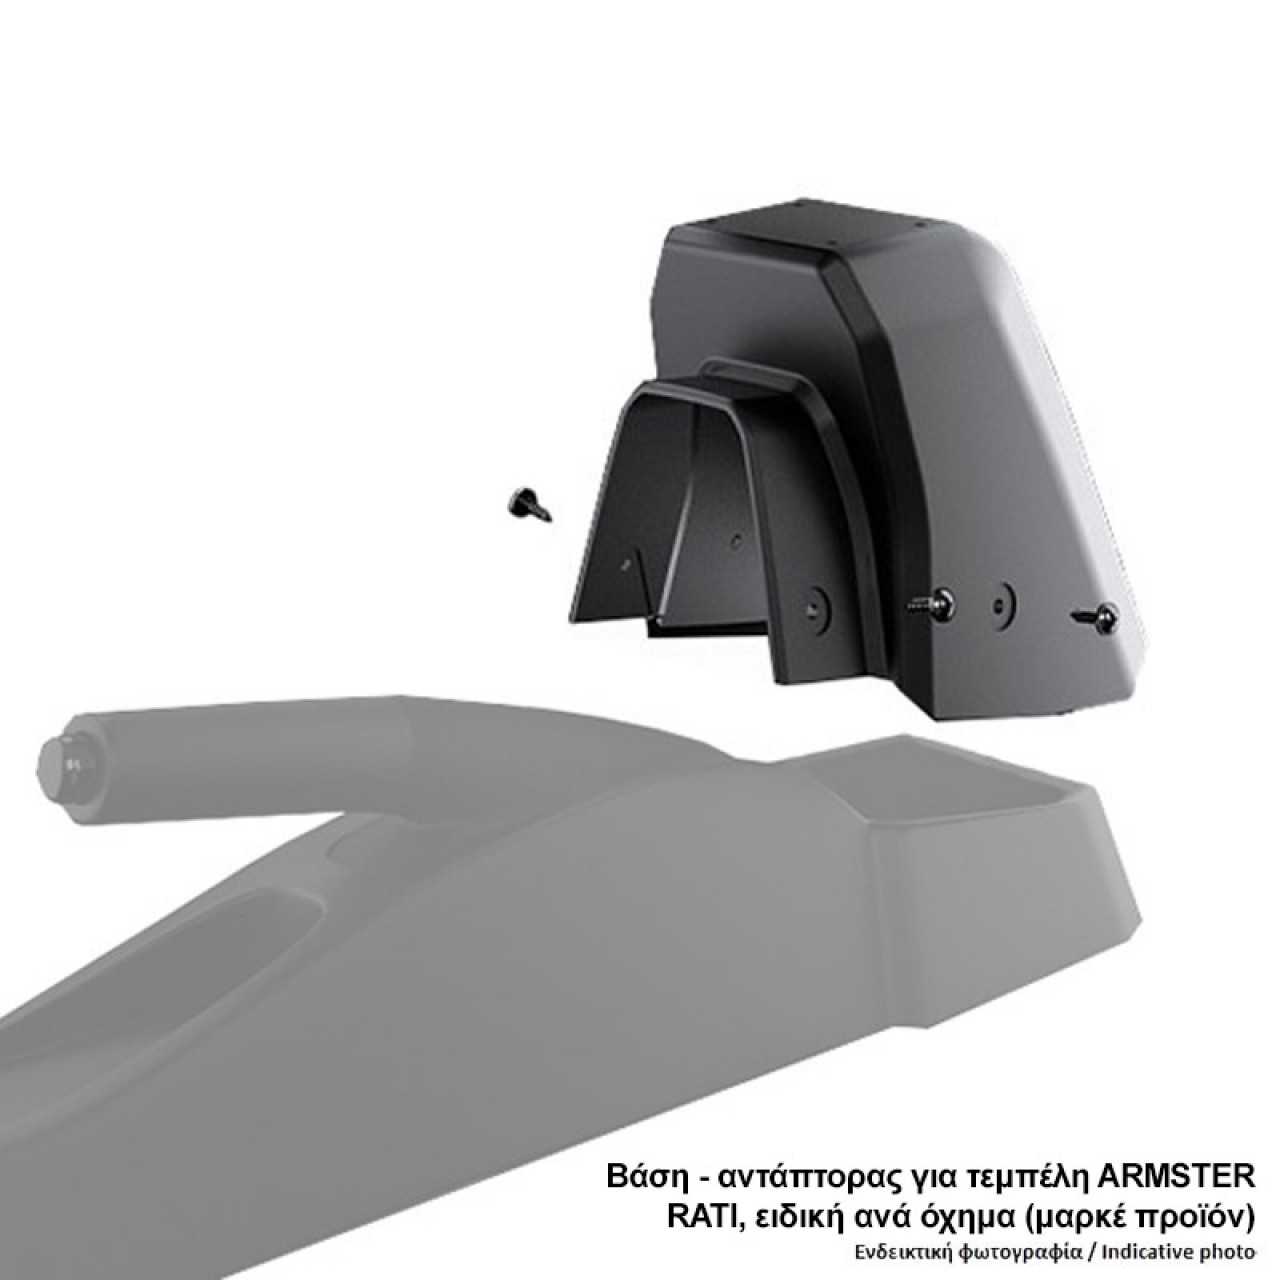 Βάση - Αντάπτορας Τεμπέλη Ειδική για FORD TRANSIT CONNECT 2014+ (+USB +ΚΑΛΩΔΙΟ AUX) Rati σε μαύρο χρώμα - 1 Τεμάχιο